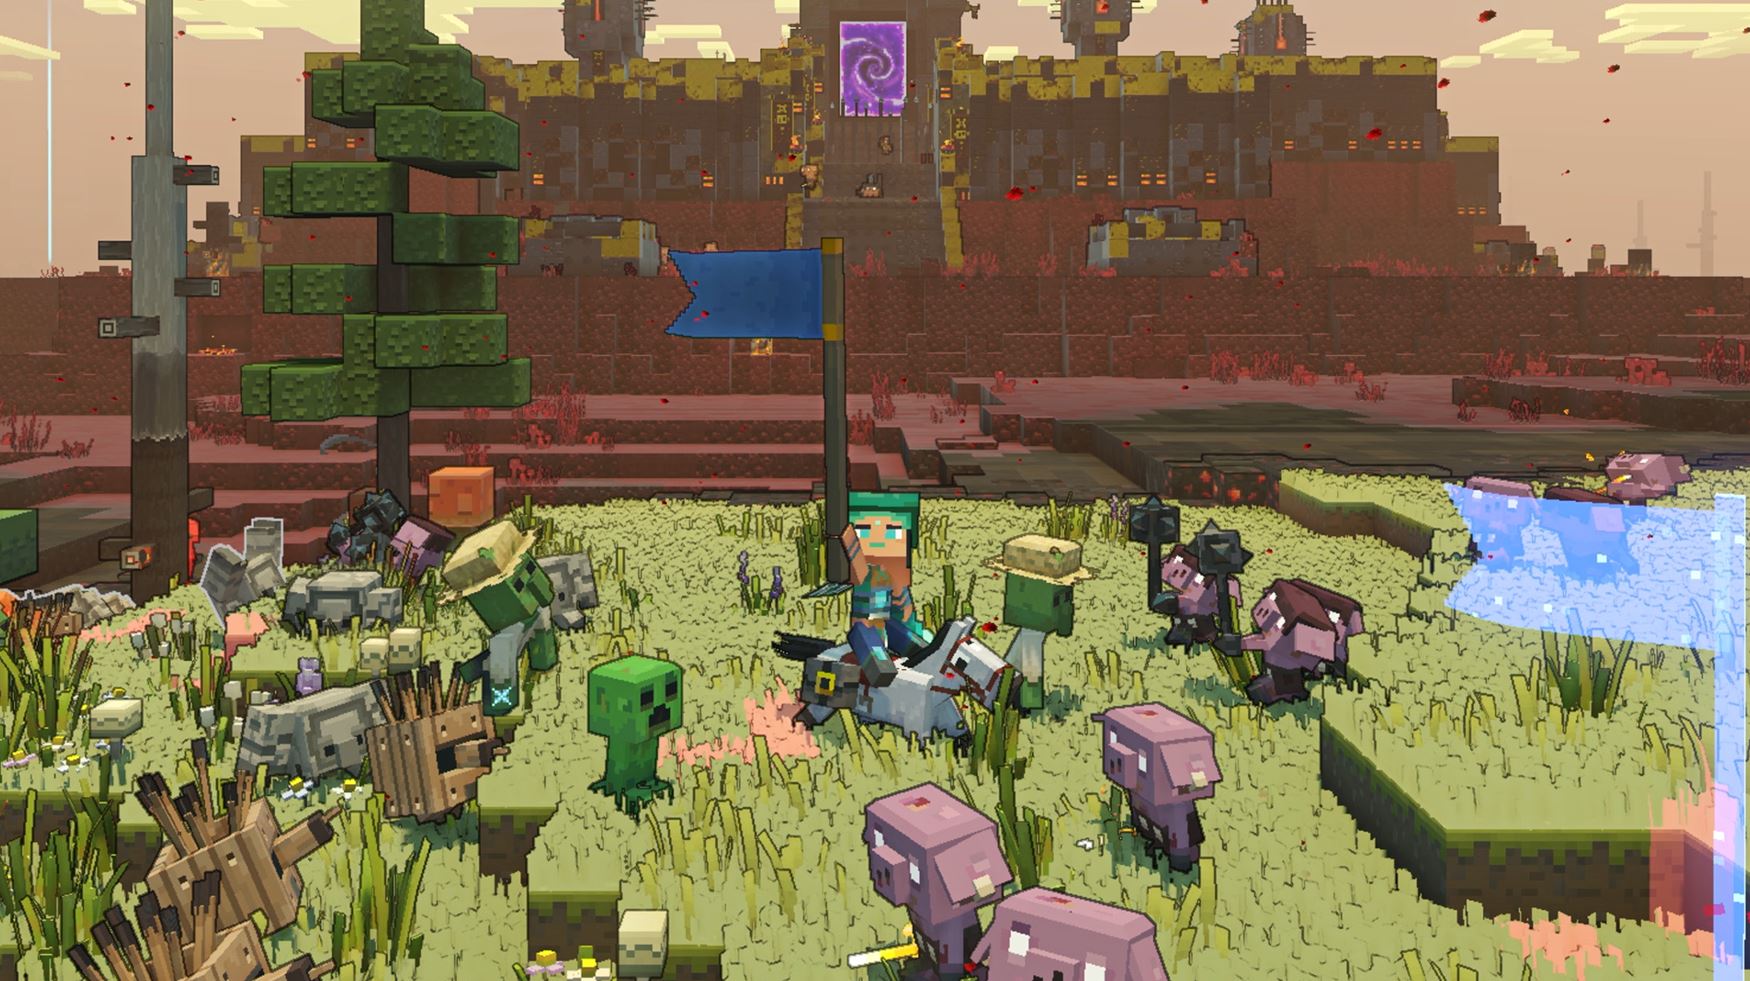 یک بازیکن اوباش را احضار می کند تا به یک پاسگاه Piglin در Minecraft Legends حمله کنند.